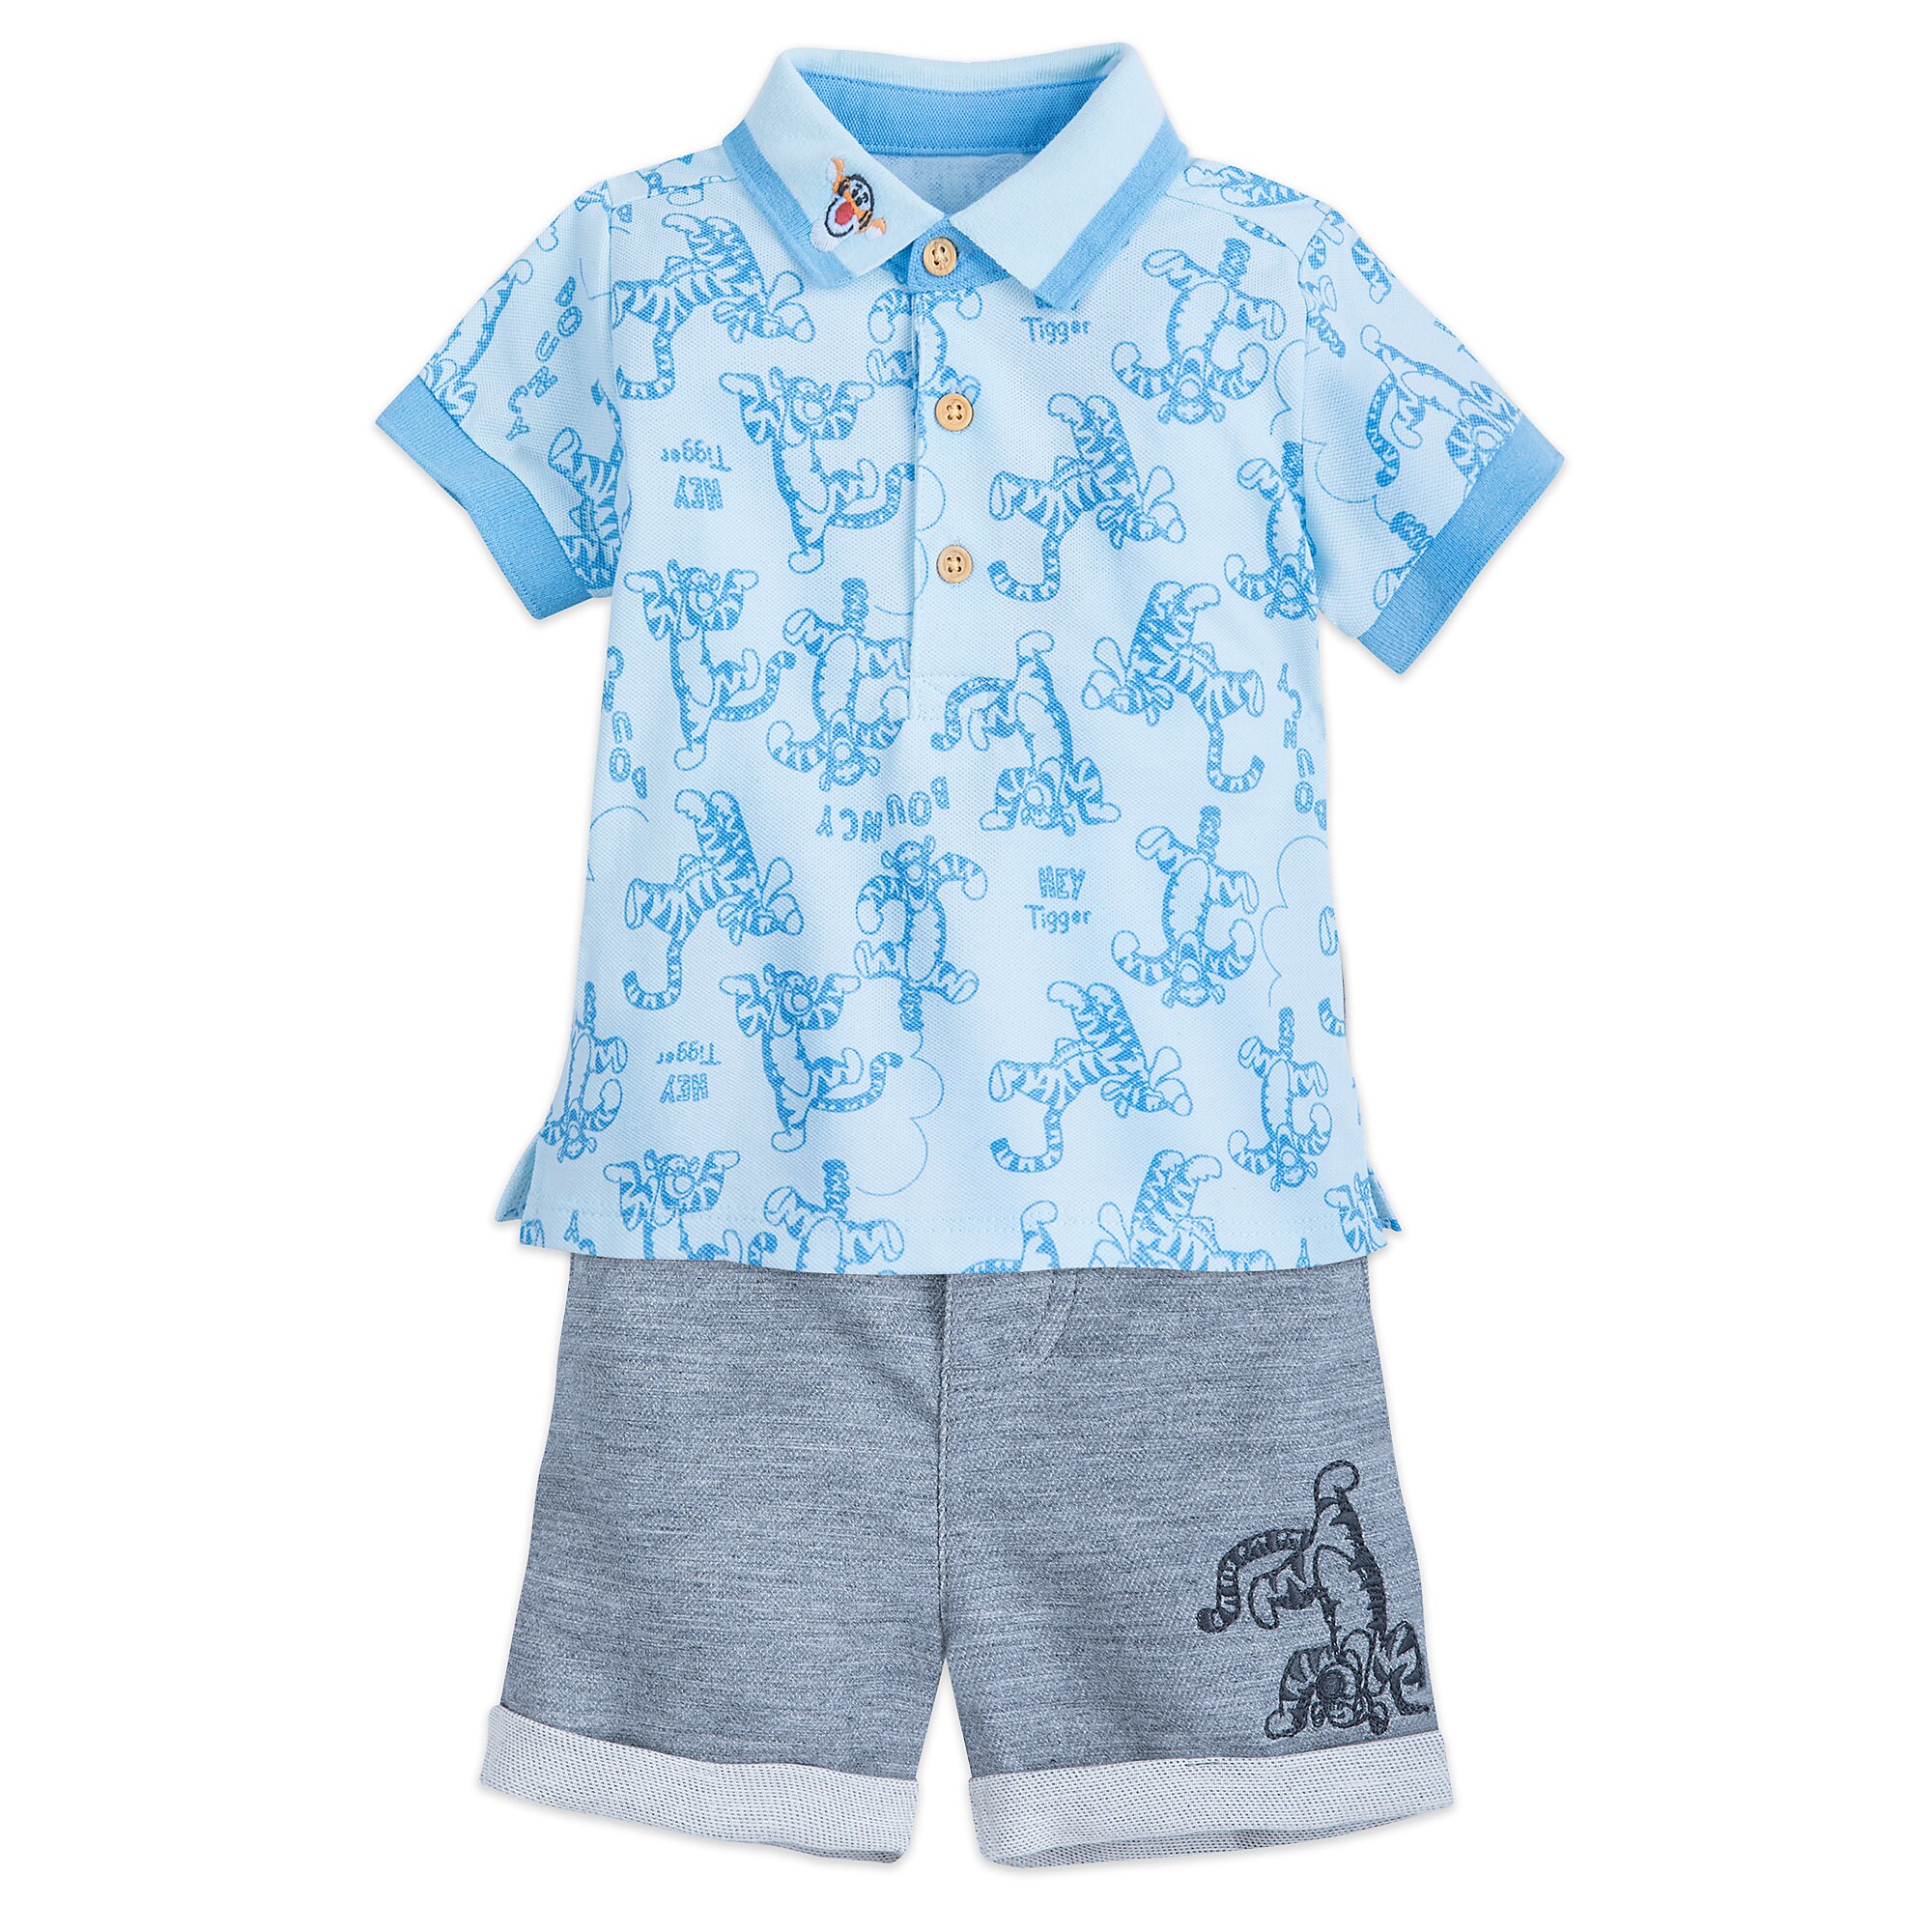 Tigger Shirt and Shorts Set for Baby